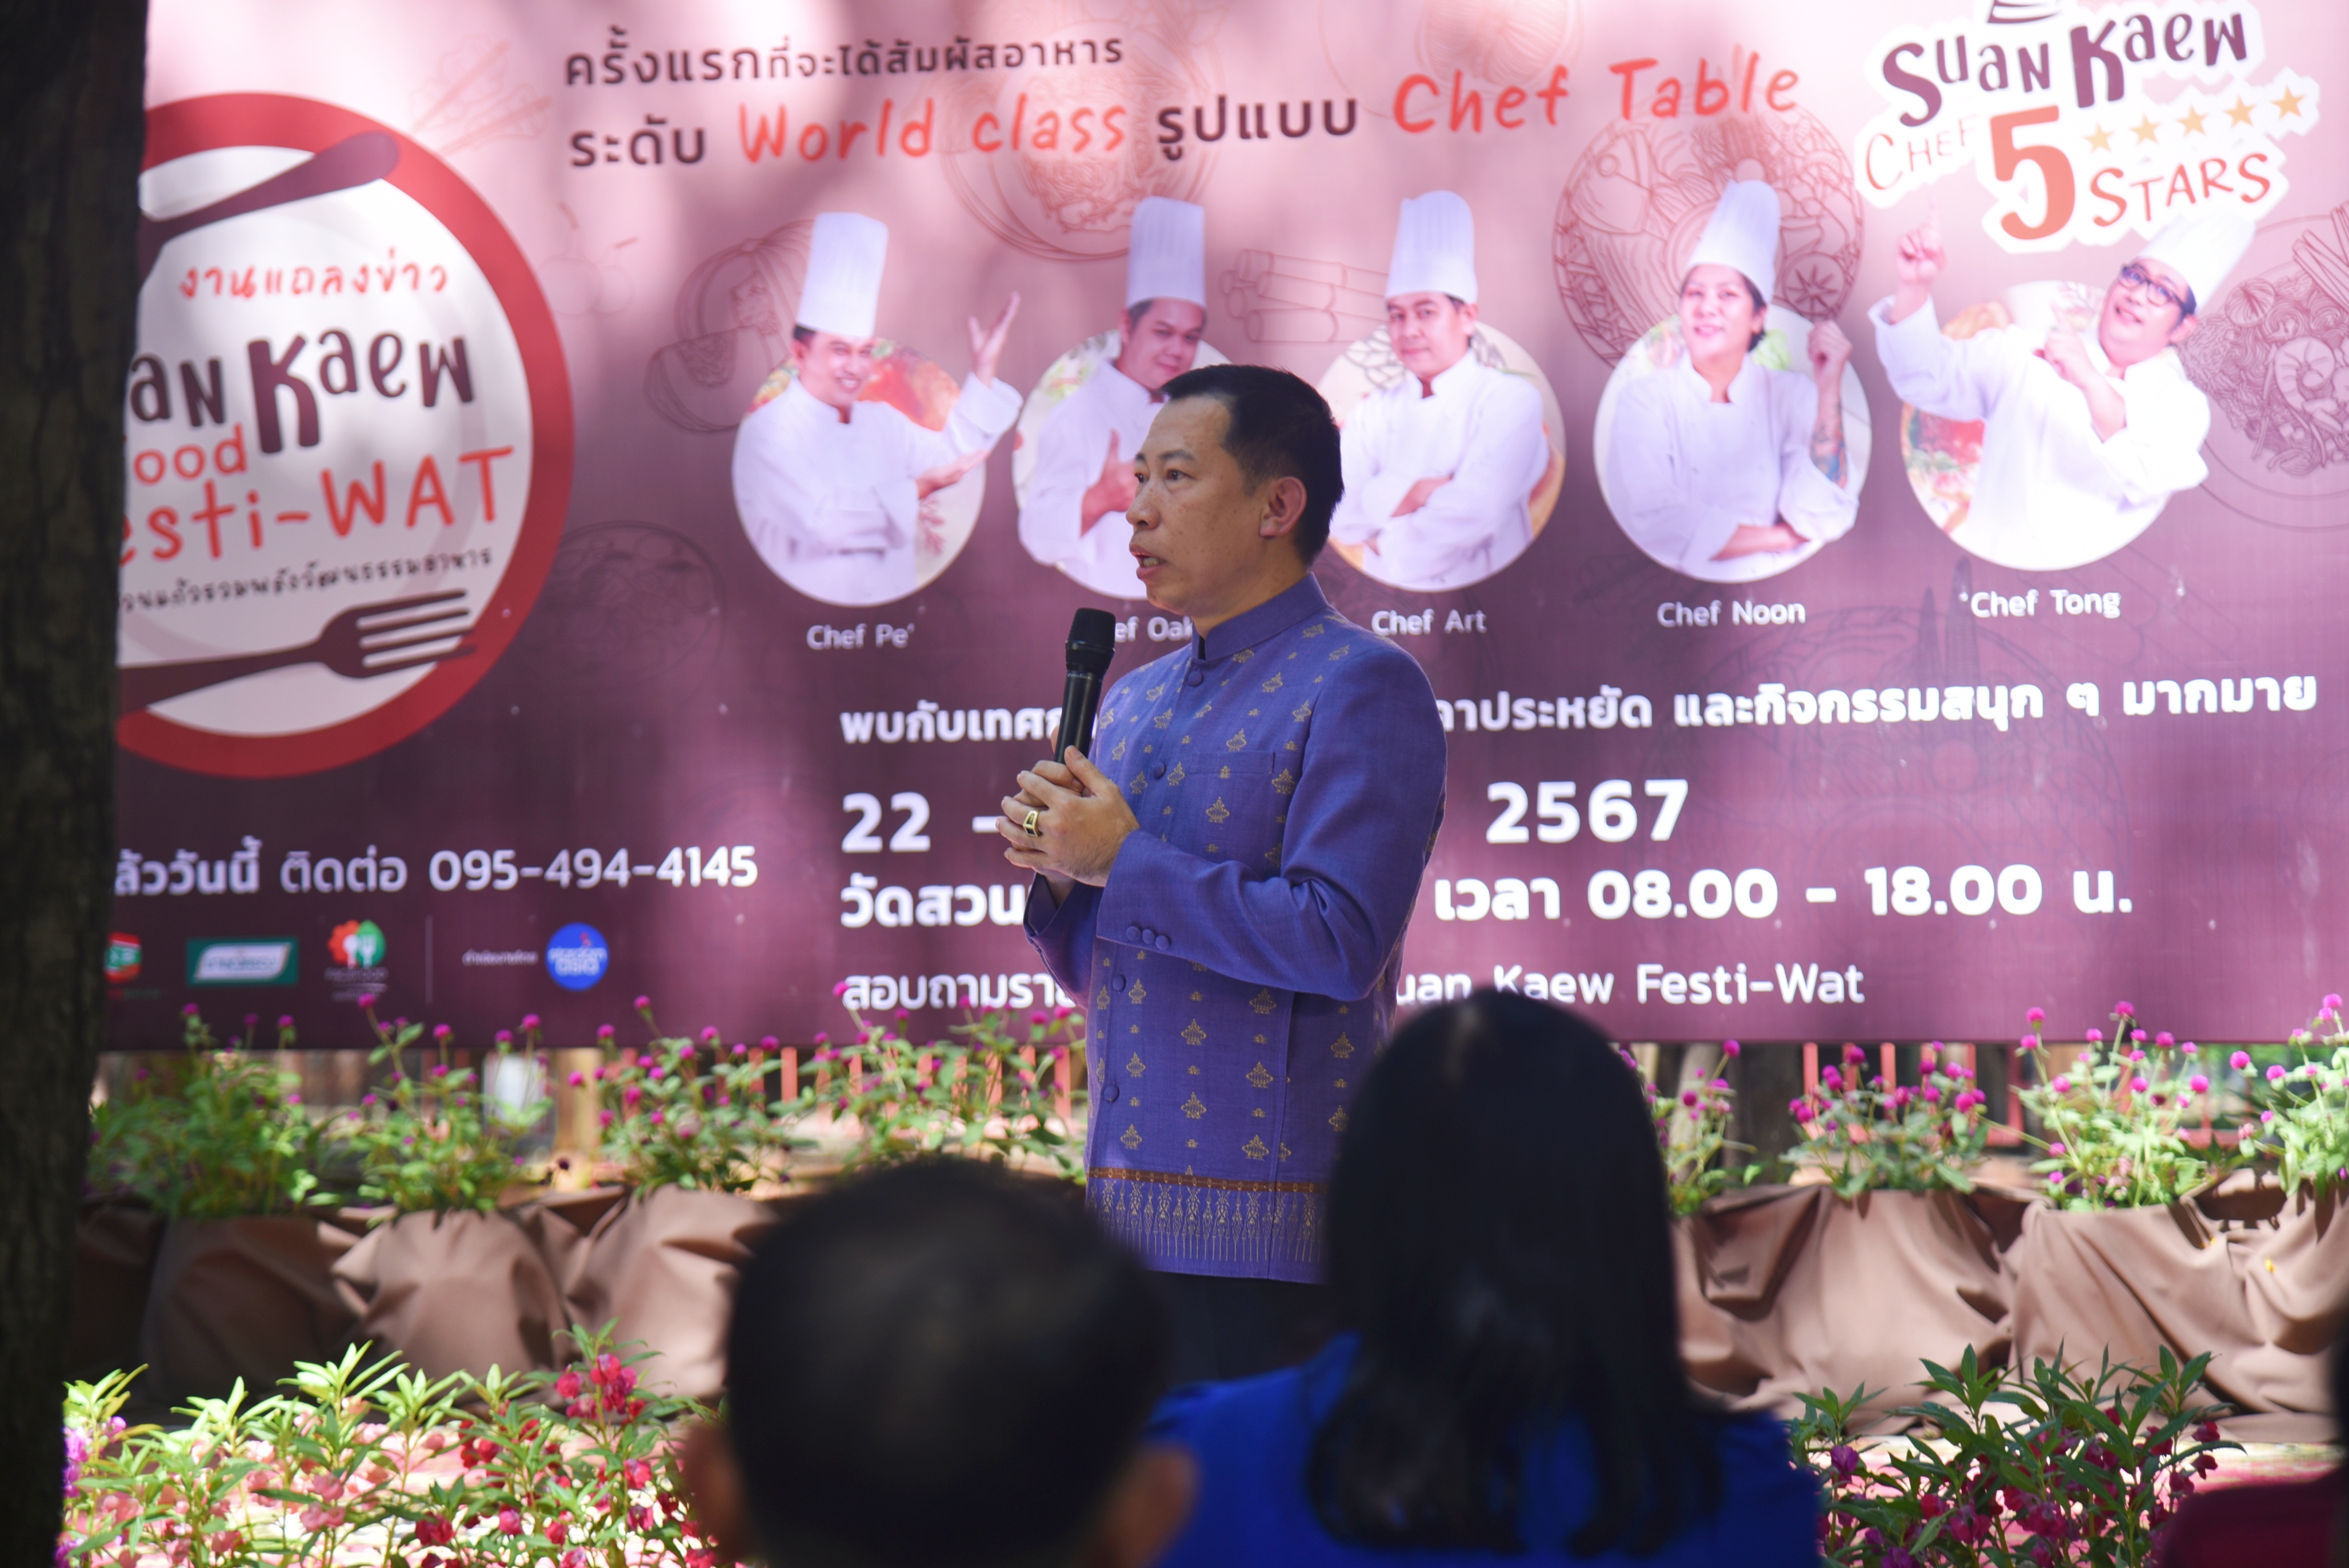 วัดสวนแก้ว ผลักดันผลิตผลท้องถิ่นสู่เมนูระดับโลก จัดงาน “Suan Kaew Food Festi-Wat (สวนแก้วรวมพลังวัฒนธรรมอาหาร)”ชิม ช้อป อาหาร 5 ดาว ราคาจับต้องได้ พร้อมประมูลของที่ระลึกจากคนบันเทิง